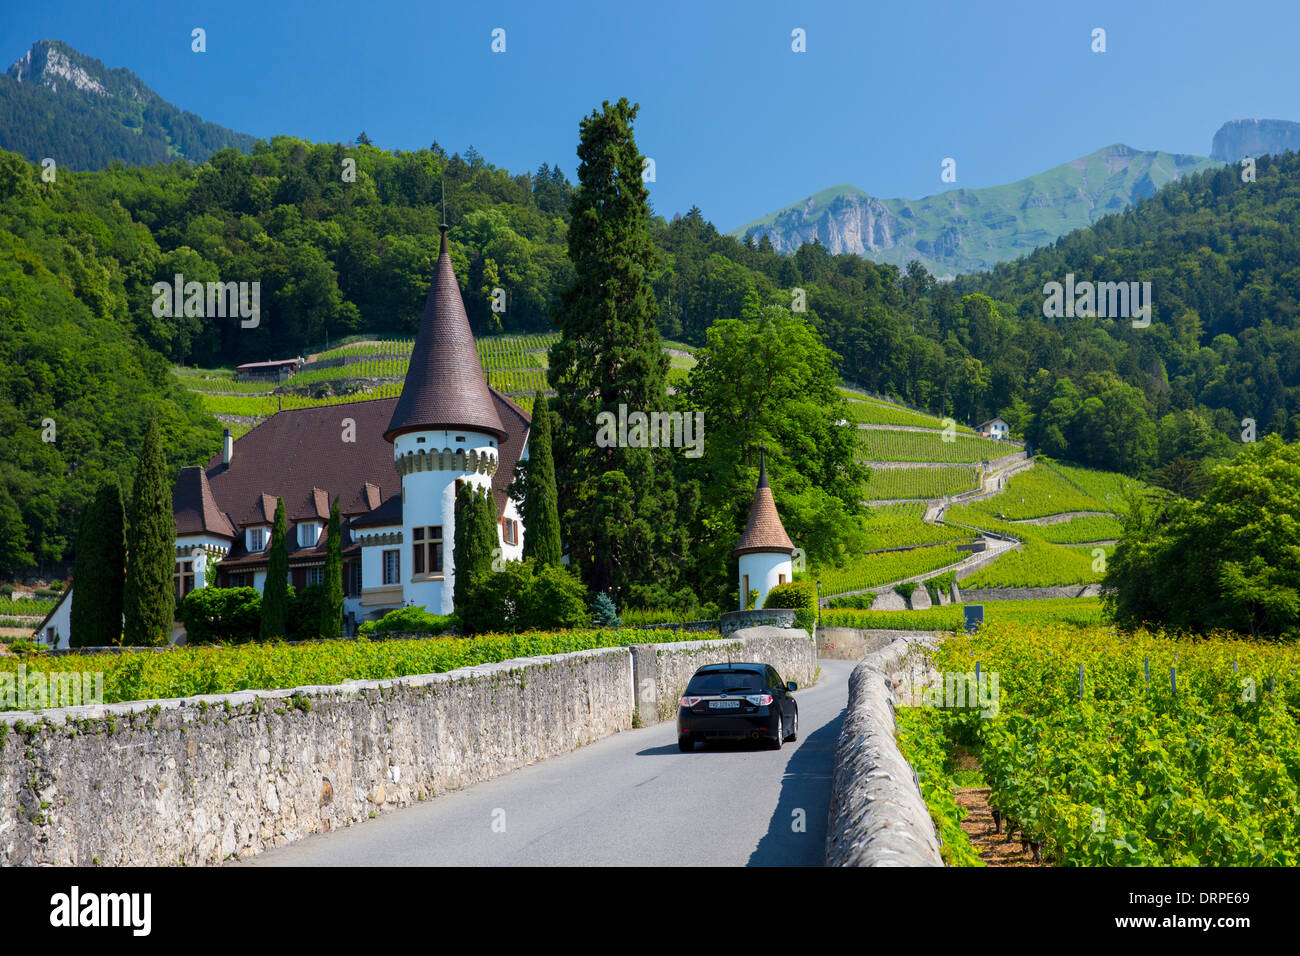 Suburu bicorps automobile passe wine estate, château Maison Blanche à Yvorne, dans la région du Chablais de la Suisse Banque D'Images